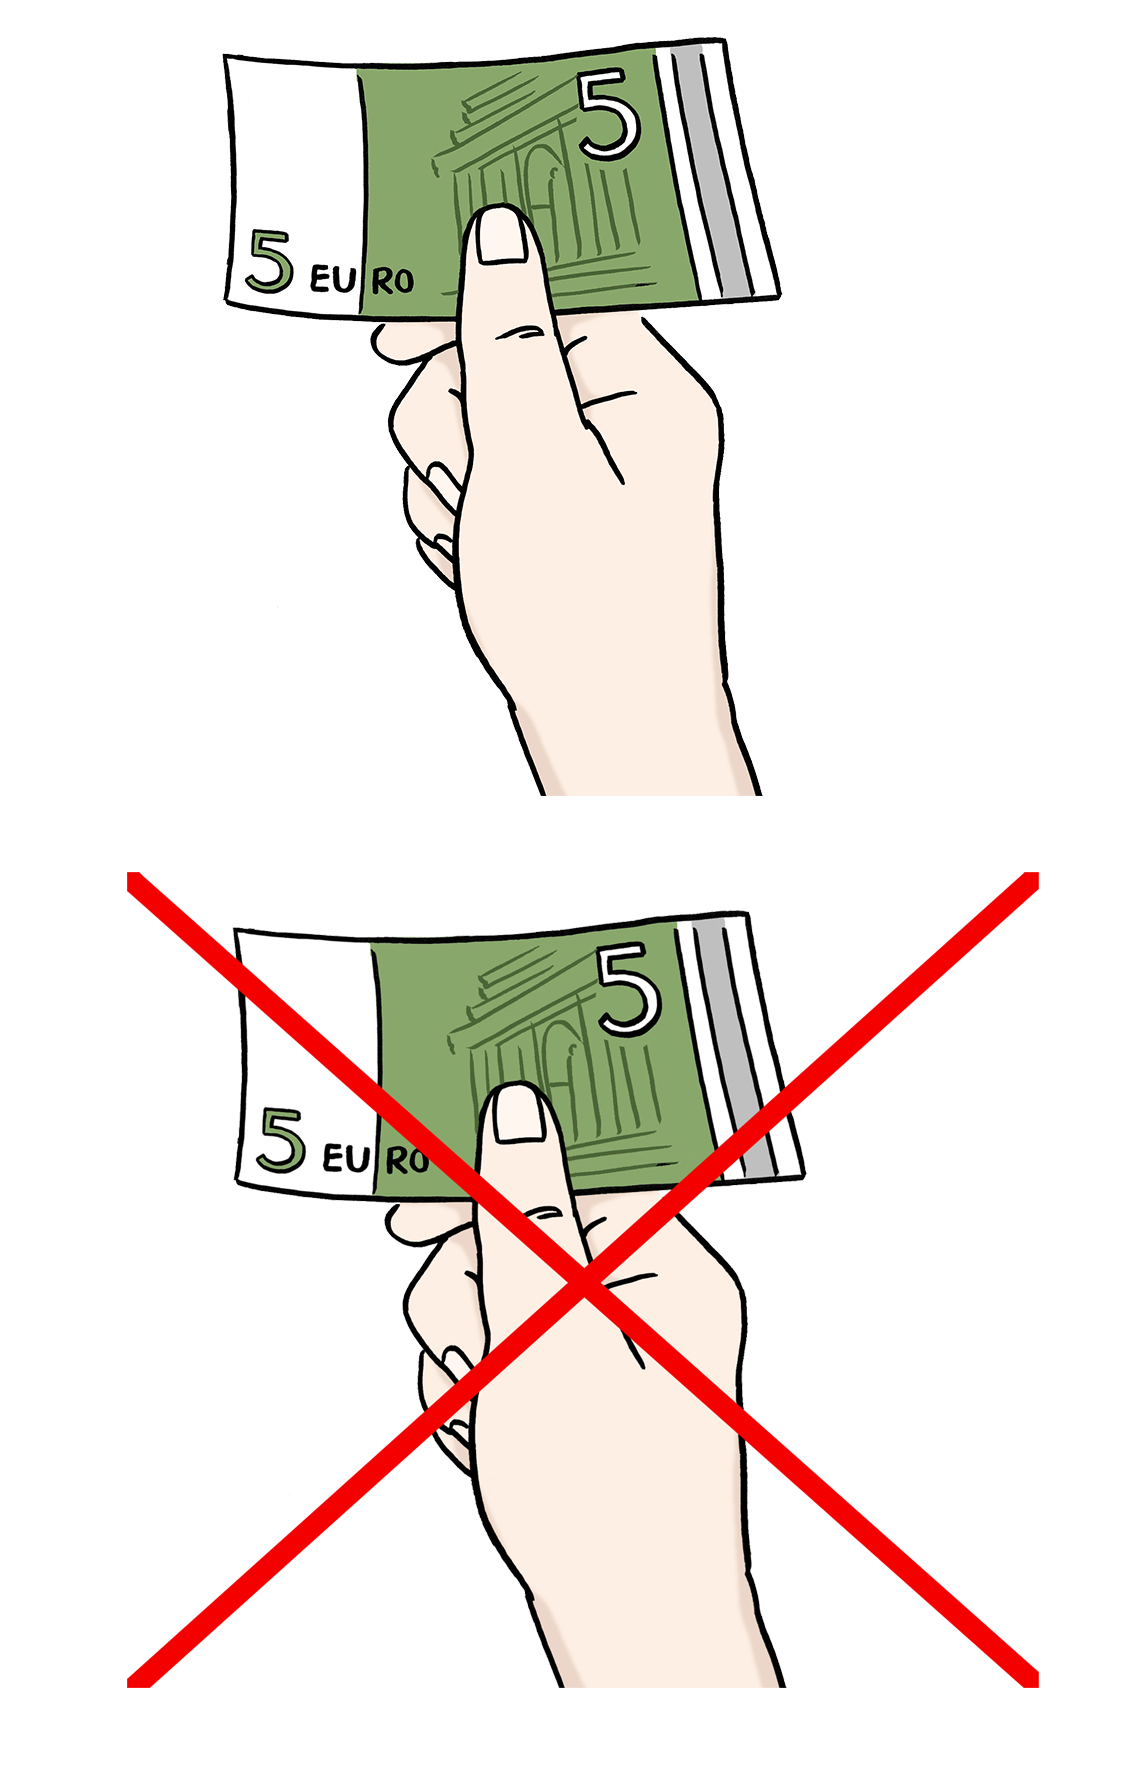 Grafik: Hand hält Geldscheine zwischen den Fingern, darunter gleiche Abbildung, jedoch durchgestrichen